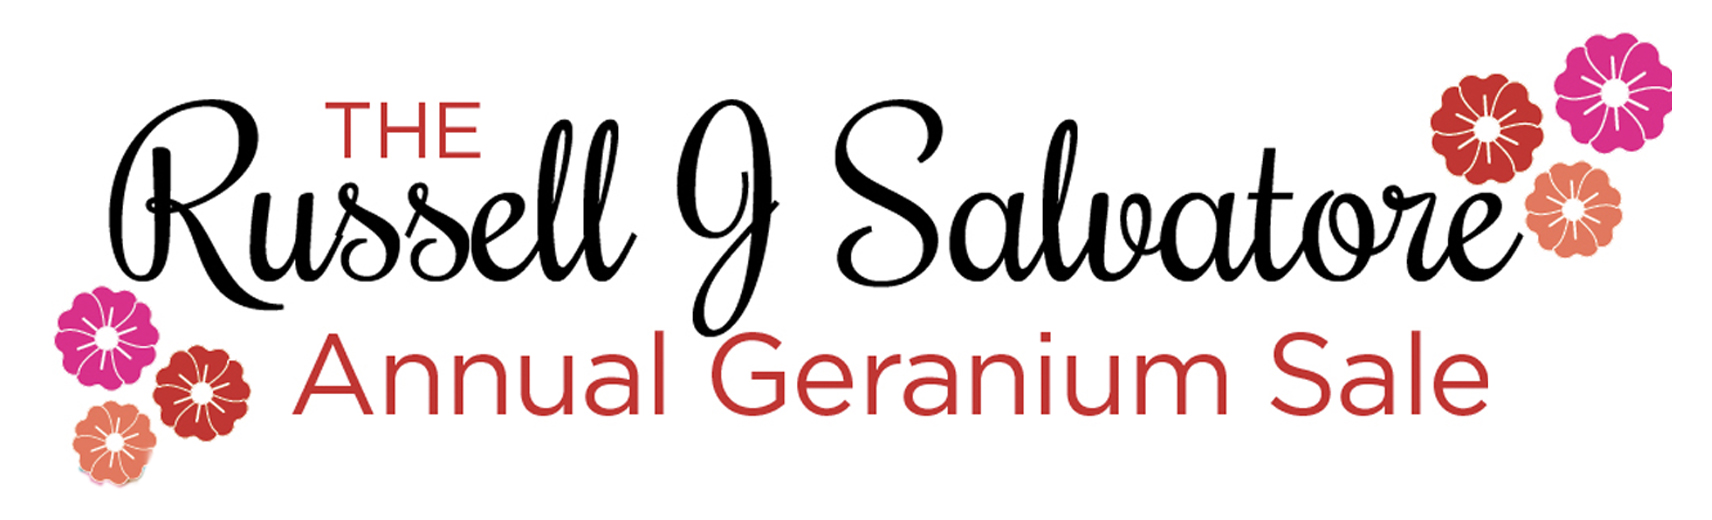 Annual Geranium Sale Graphic